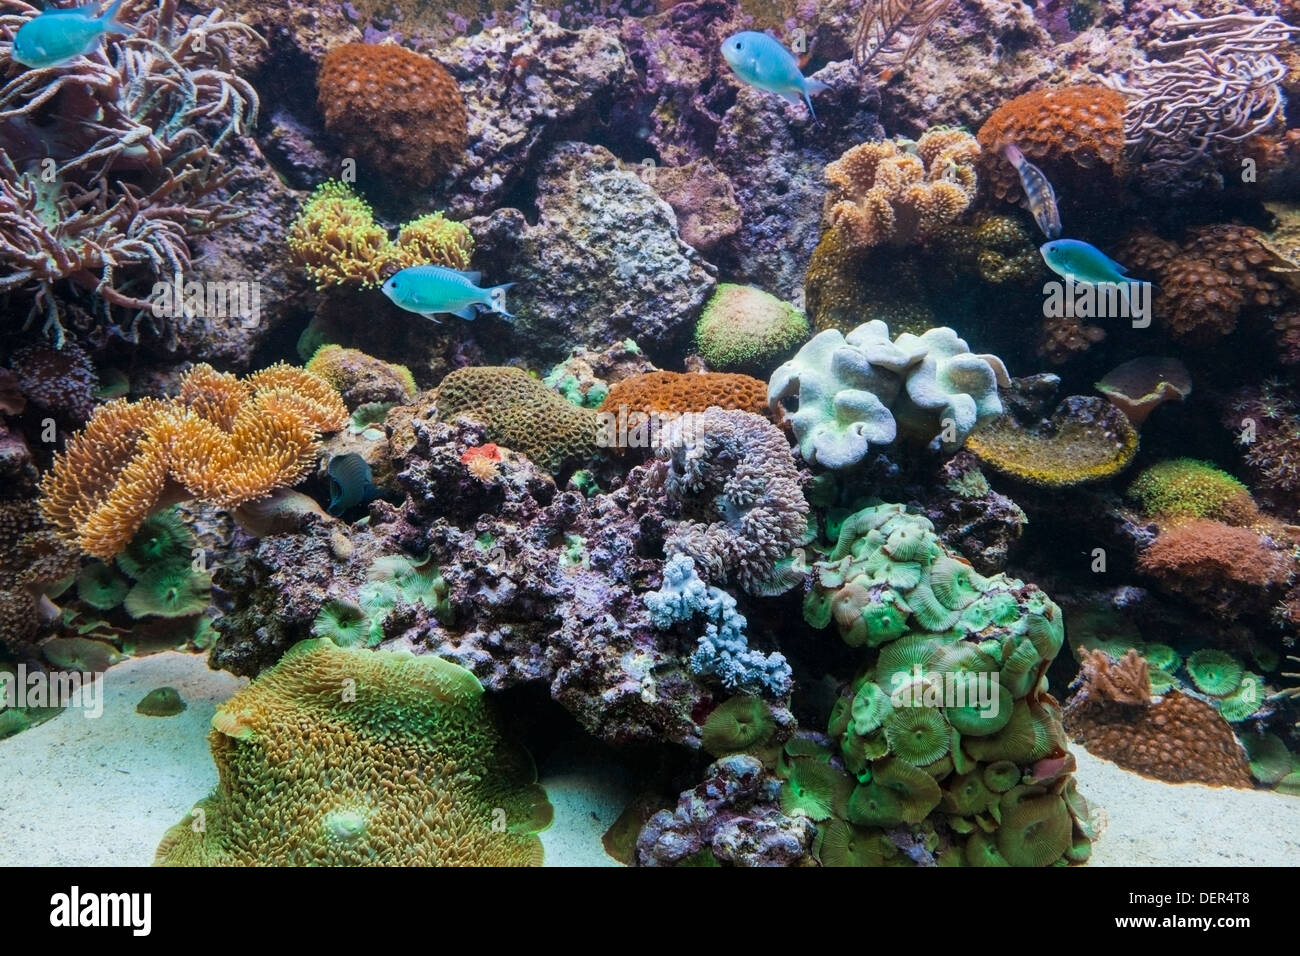 Underwater view in aquarium. Fish, coral reef Stock Photo